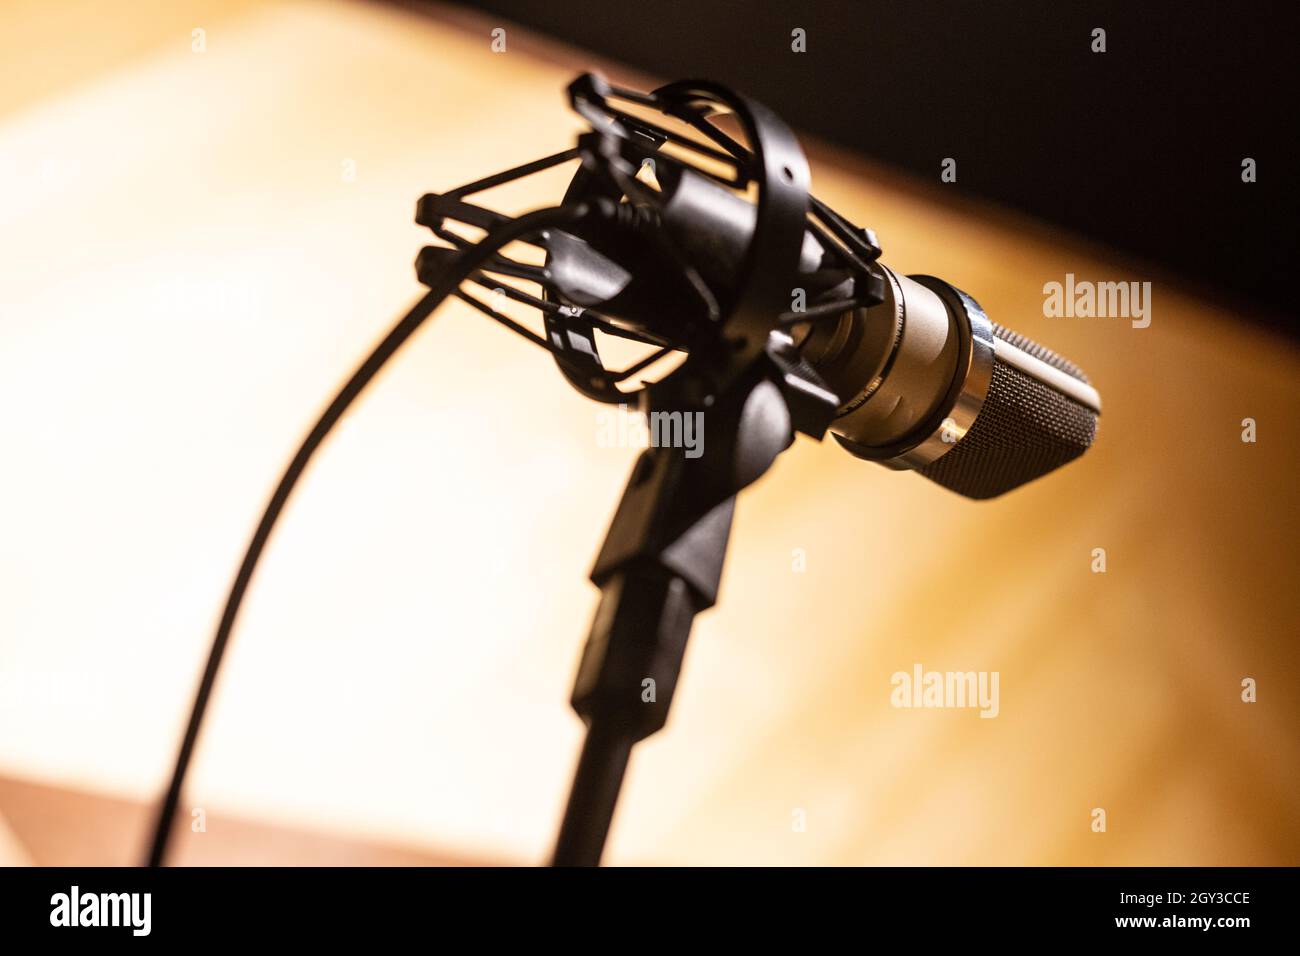 Image of studio black microphone. Stock Photo